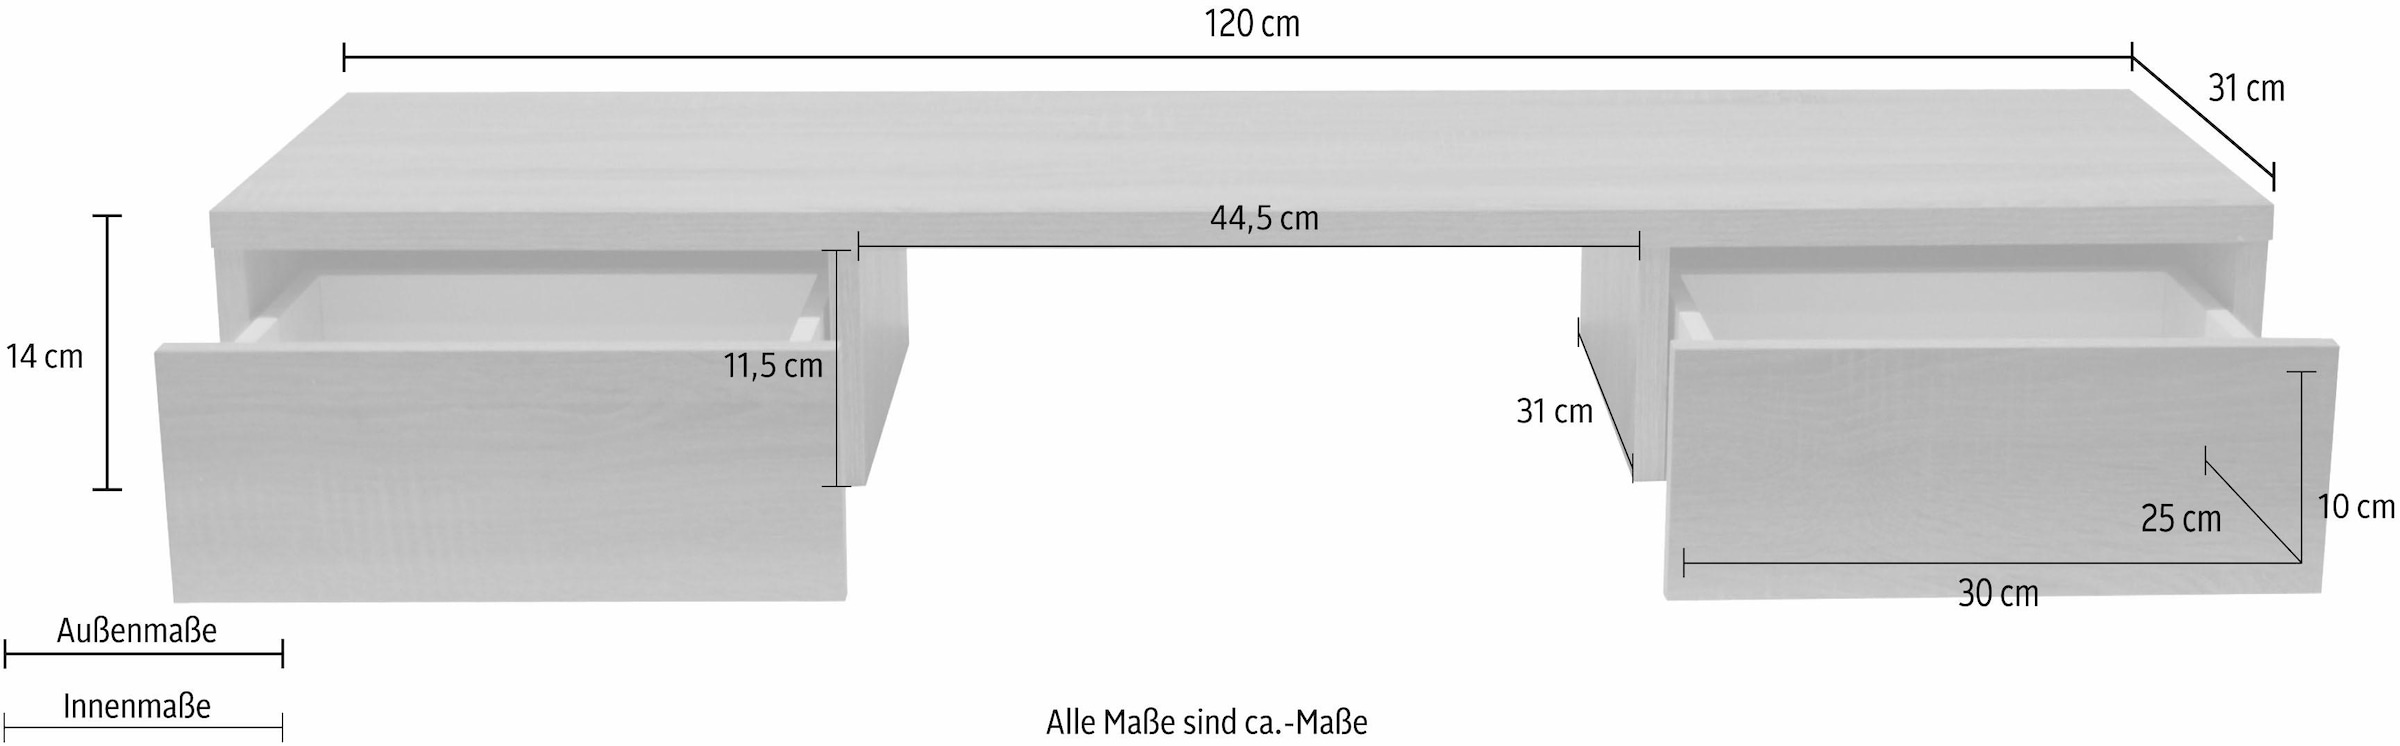 Mäusbacher Tischaufsatz »Mio« kaufen bei OTTO | Ansteckplatten